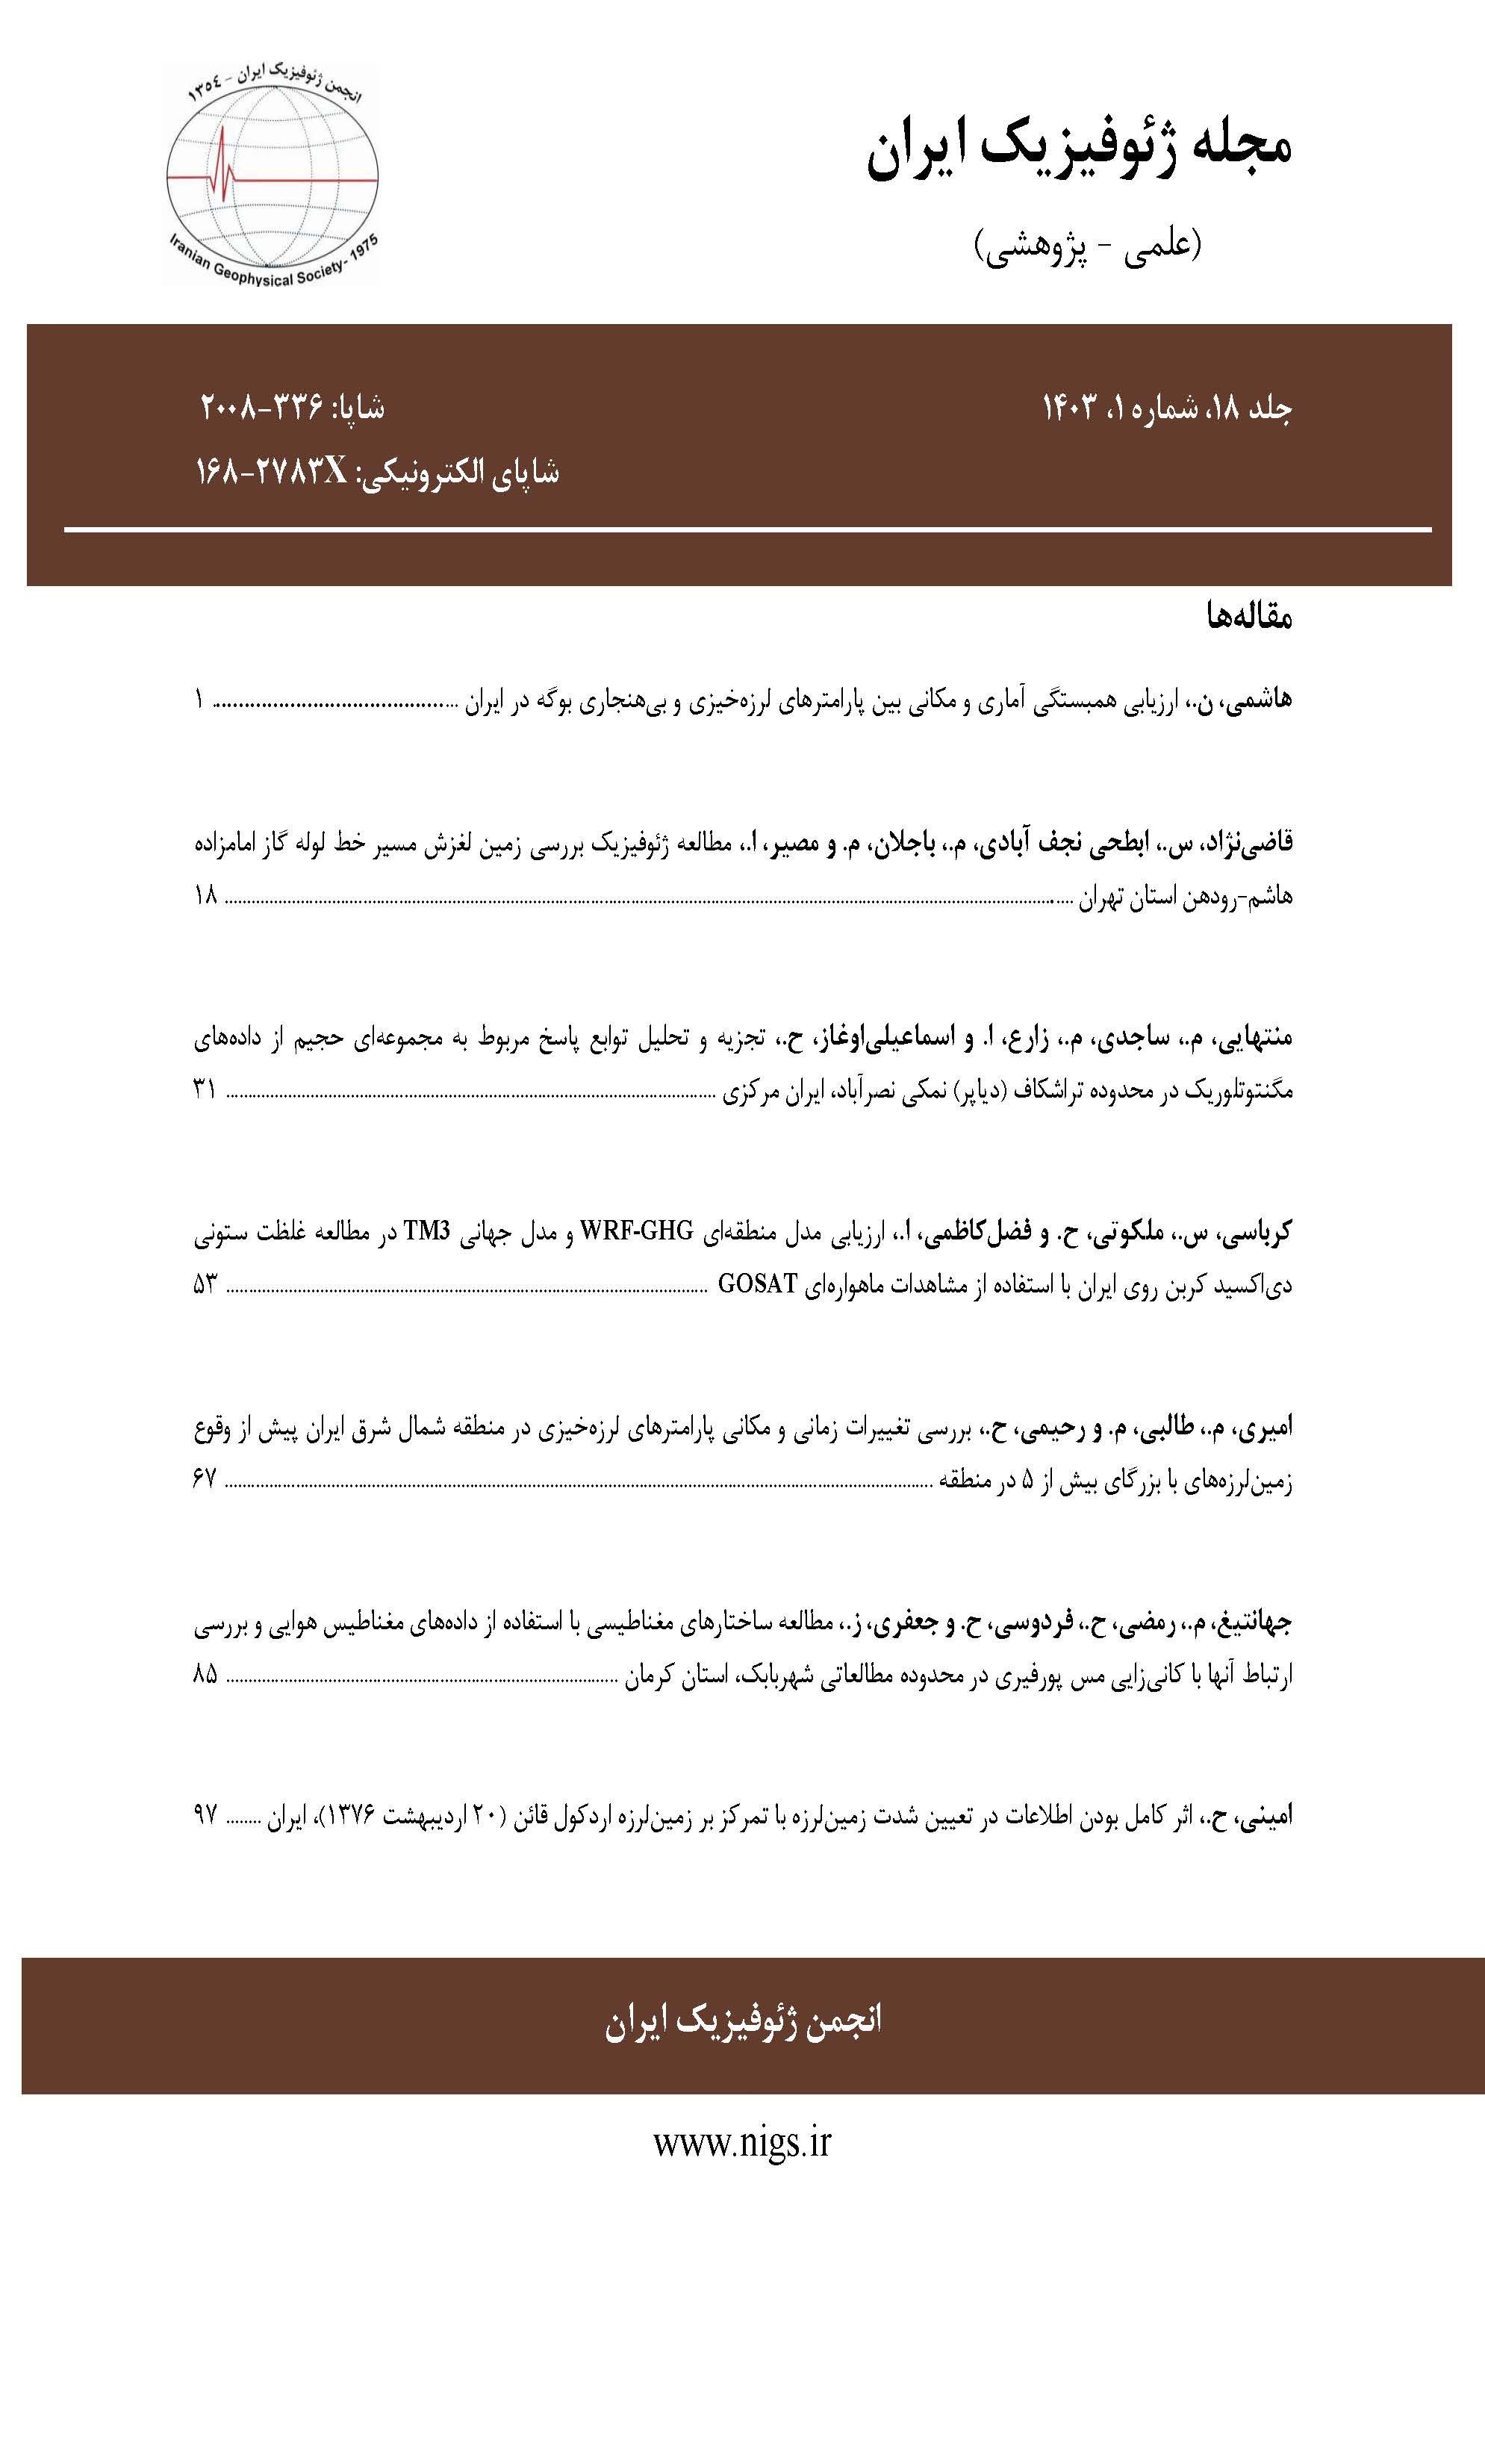 مجله ژئوفیزیک ایران